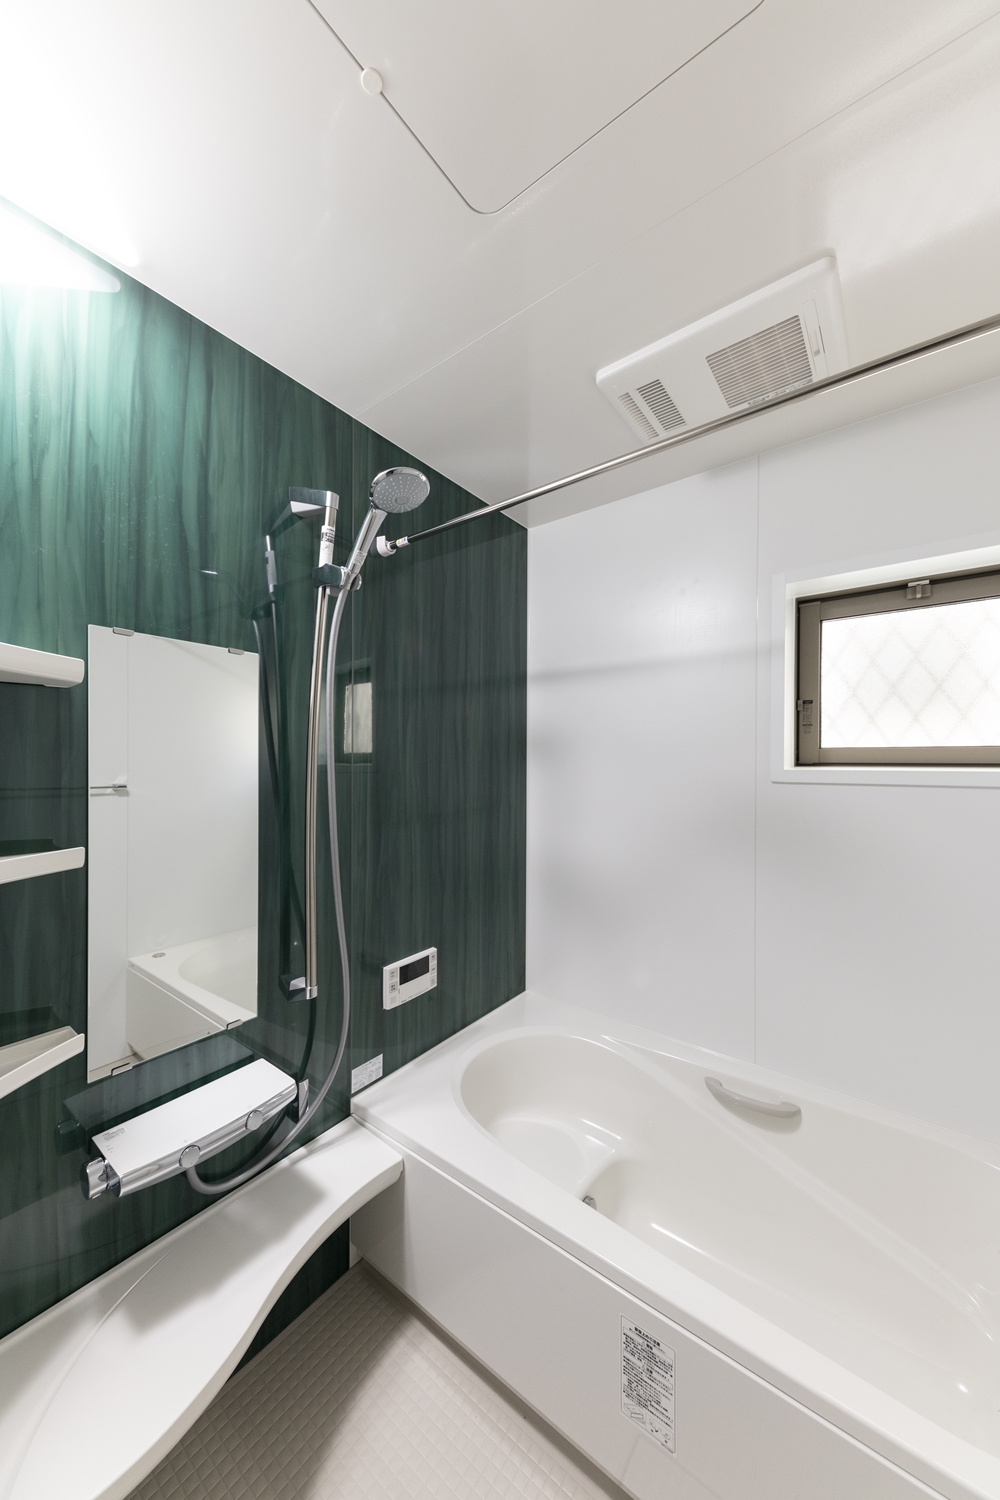 鮮やかなグリーン色のデザインが浴室空間を彩ります。